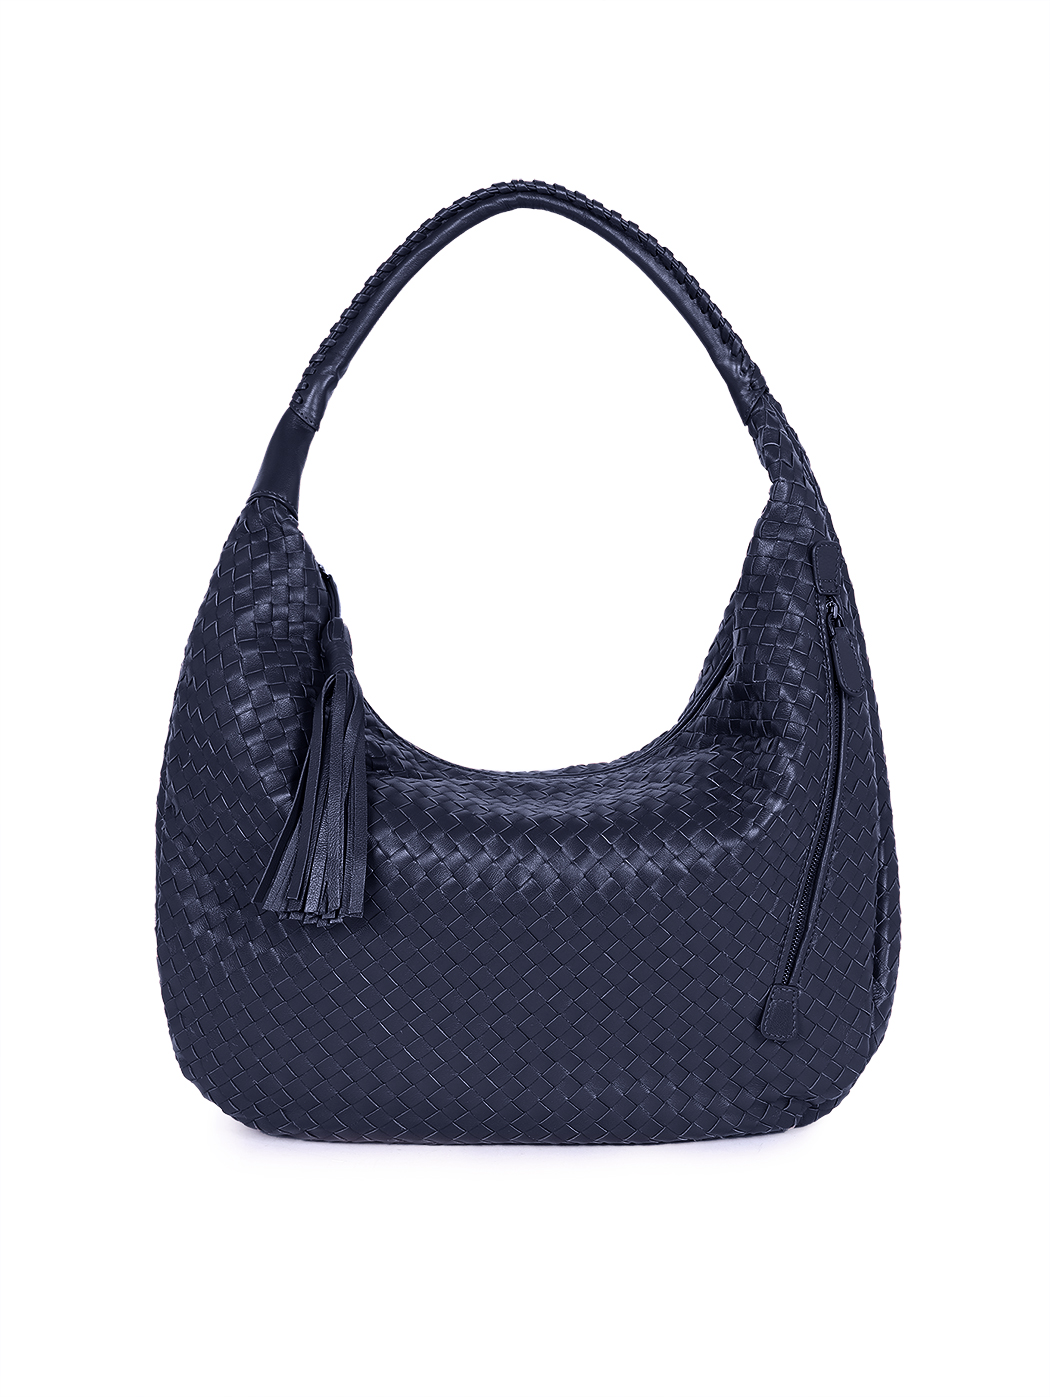 Large Hobo Woven Leather Shoulder Bag Navy Blue